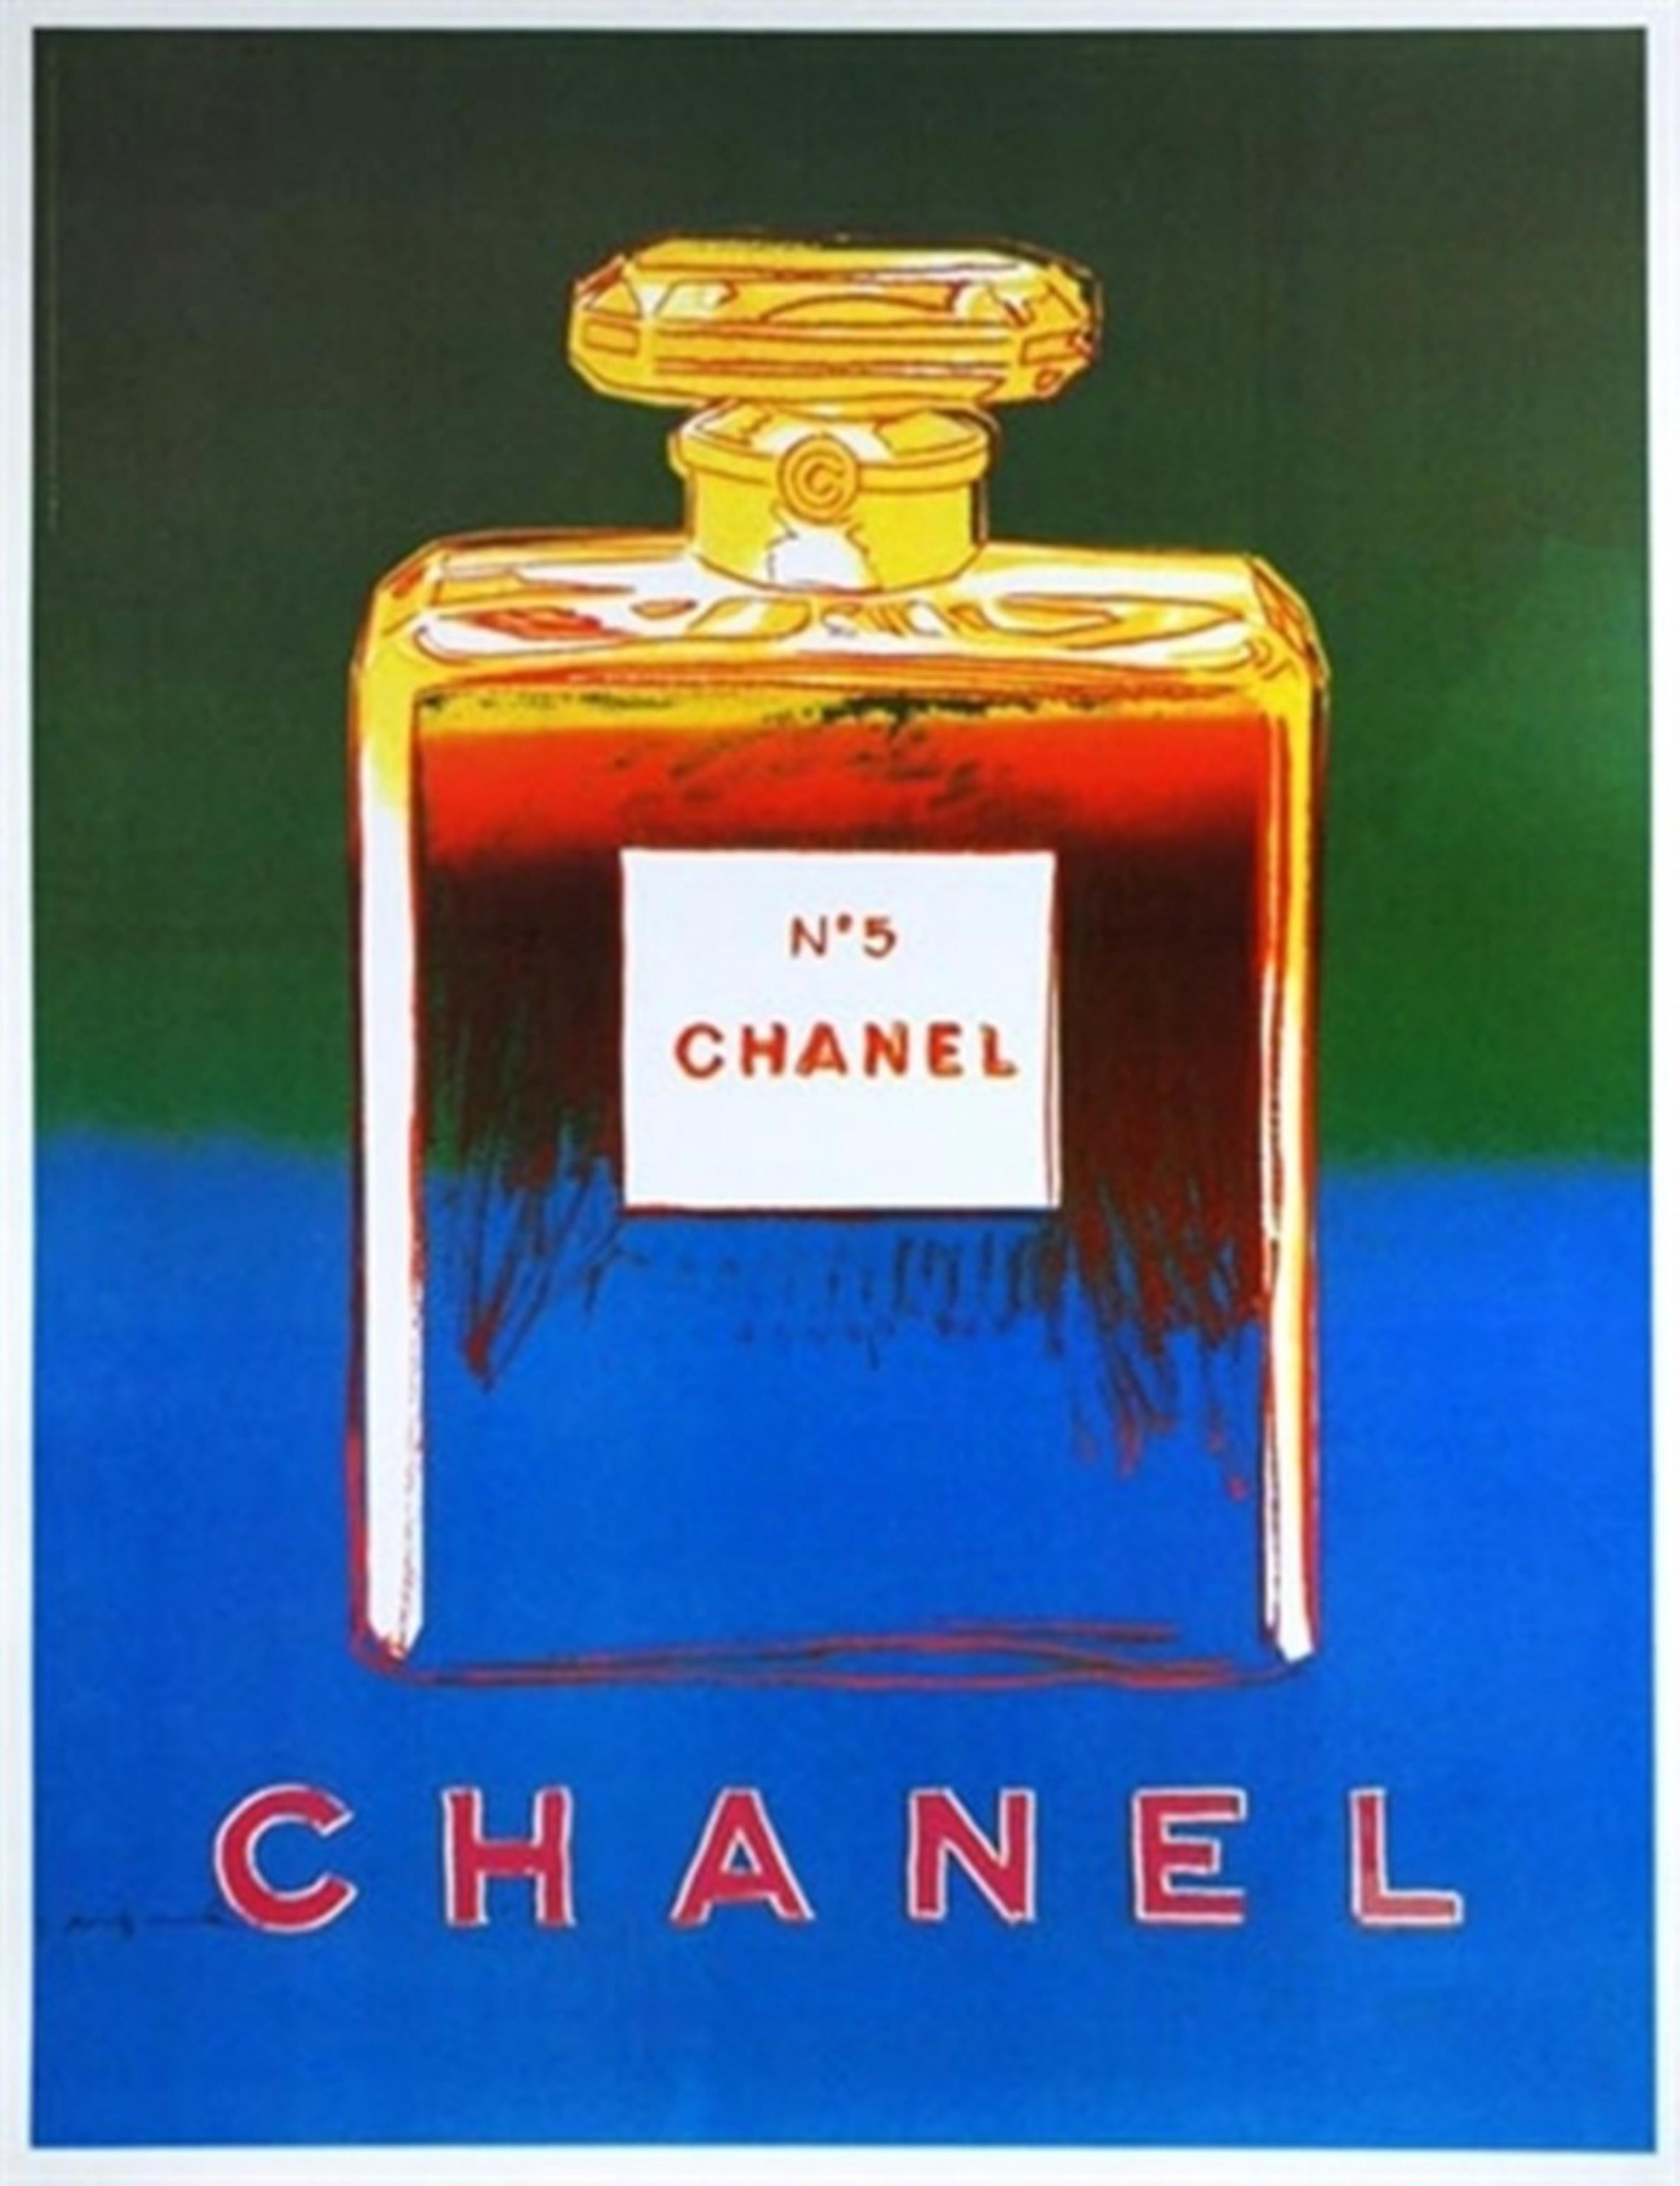 Après Andy Warhol
Chanel No. 5 (Suite de quatre tirages individuels (séparés) sur toile de lin), 1996
Suite de quatre (4) lithographies offset individuelles séparées à tirage limité en couleurs sur papier vélin apposées sur un élégant support en